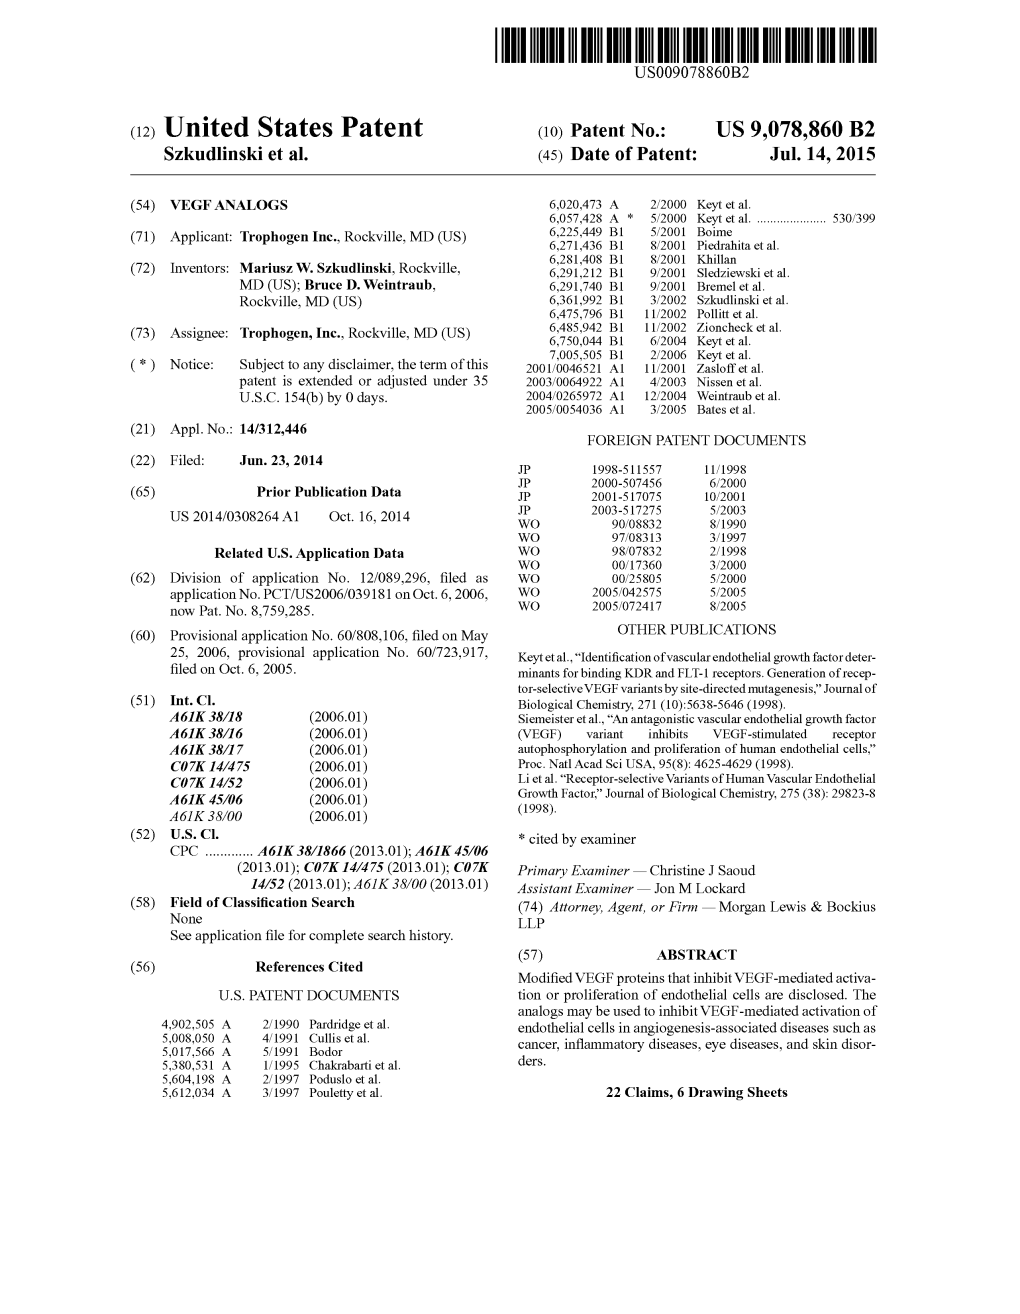 (12) United States Patent (10) Patent No.: US 9,078,860 B2 Szkudlinski Et Al